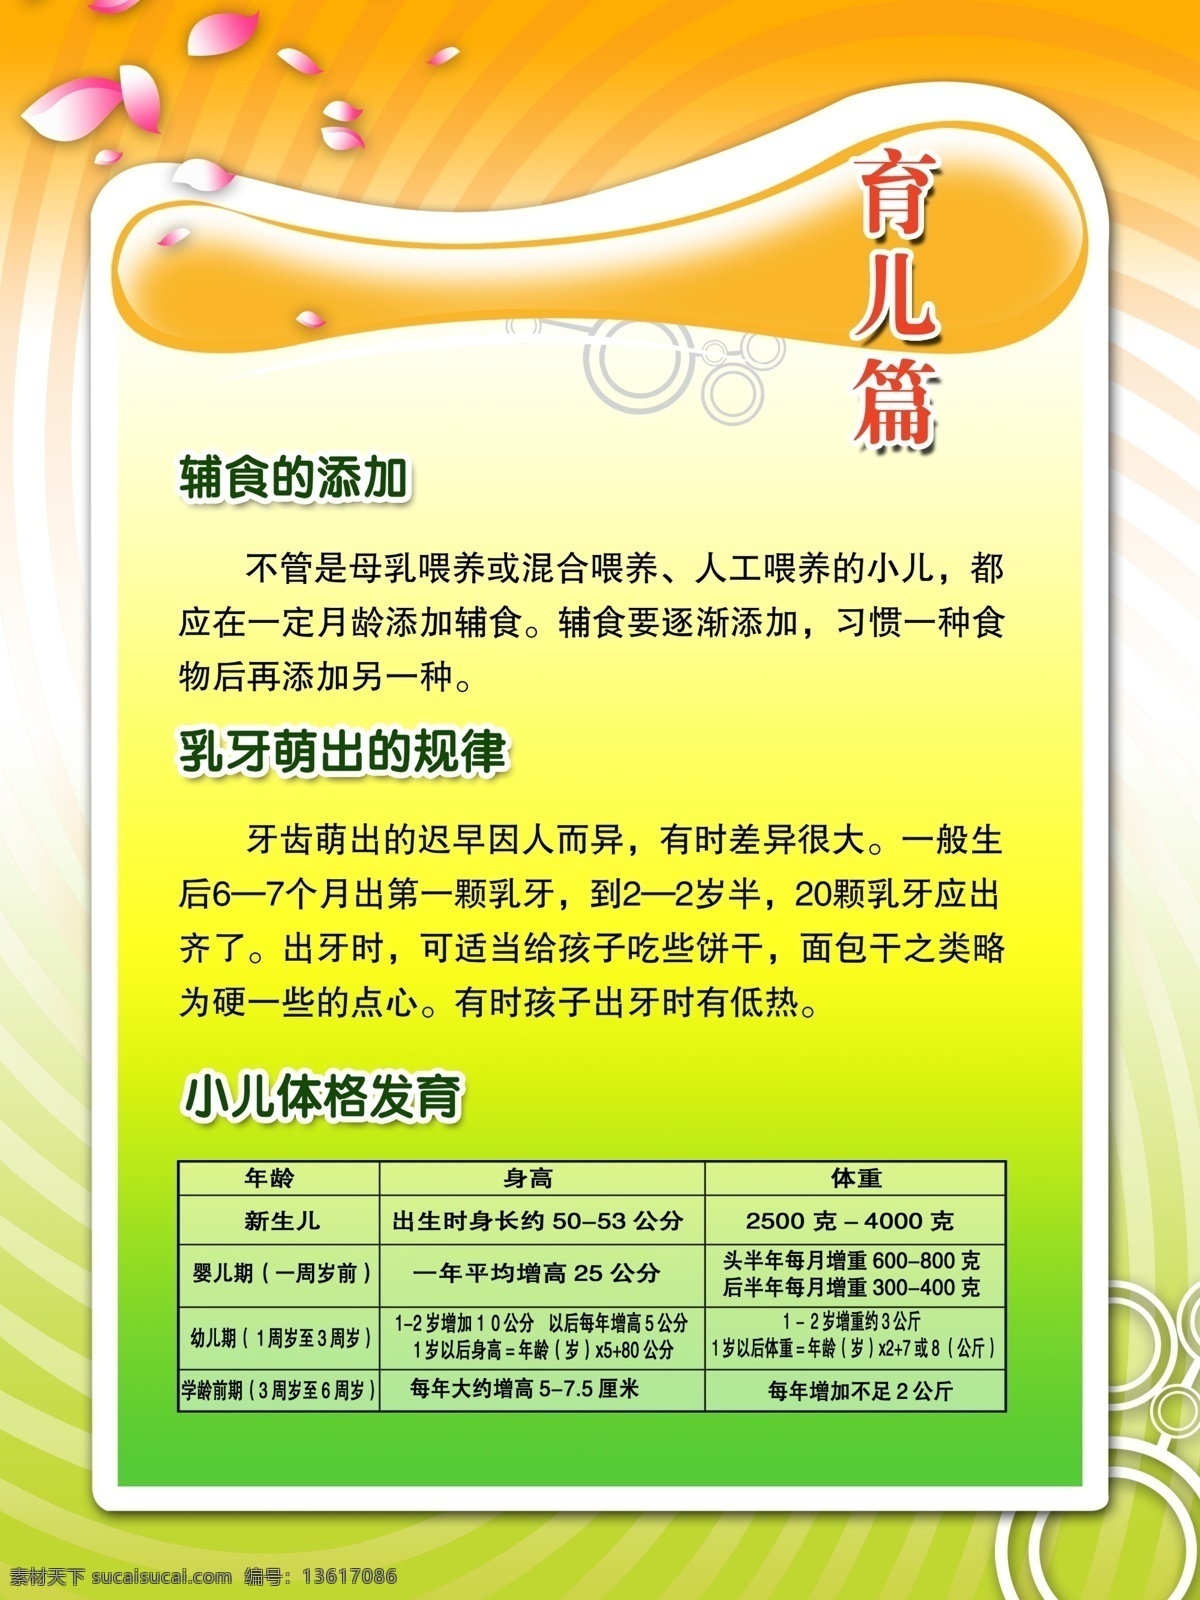 育儿 健康 方法 广告宣传 花叶 花纹 花纹效果 中文字 白色条纹 绿黄色背景 展板模板 广告设计模板 源文件